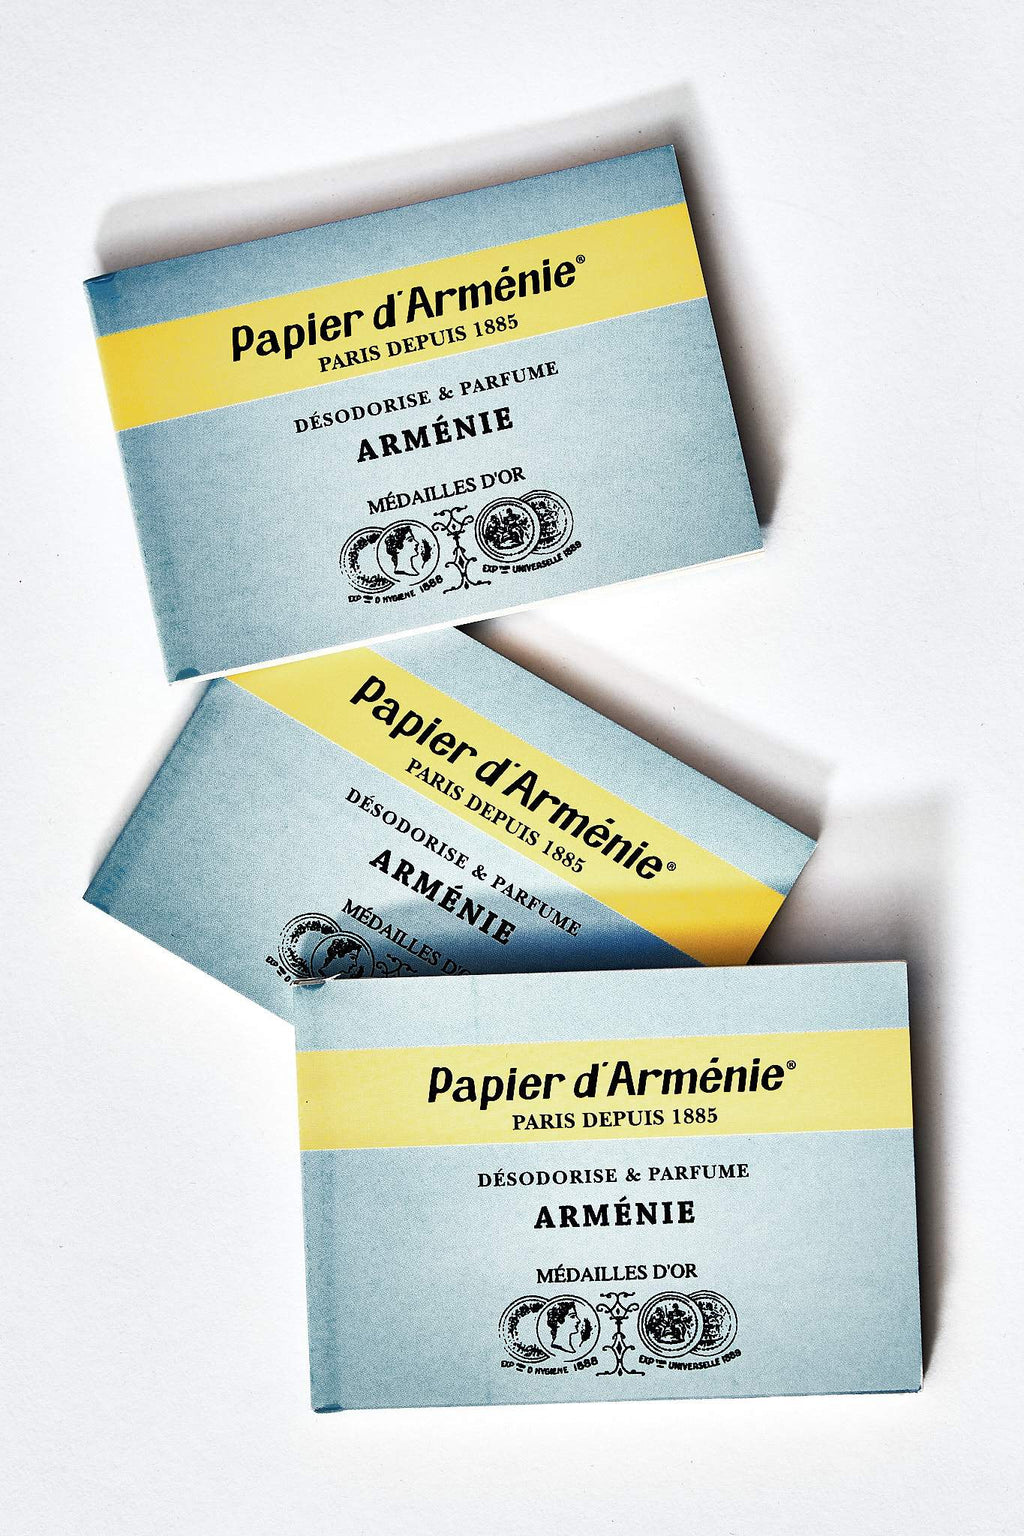 La Papier d'Arménie parfume votre intérieur pour le plaisir de tous.